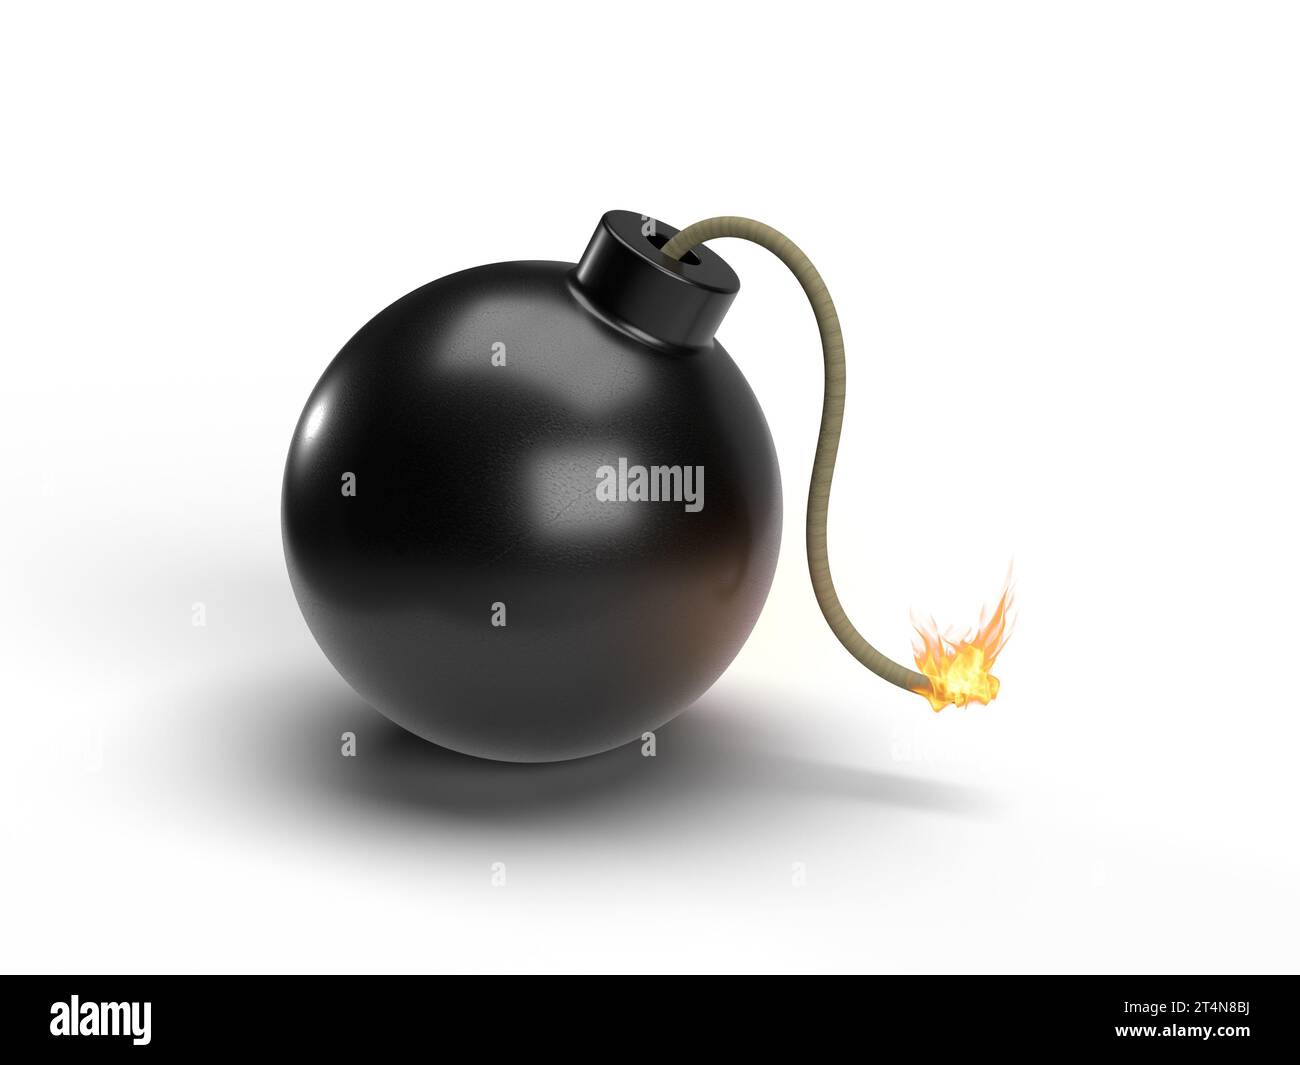 Black round bomb with burning fuse icon on white background. 3D illustration. Stock Photo